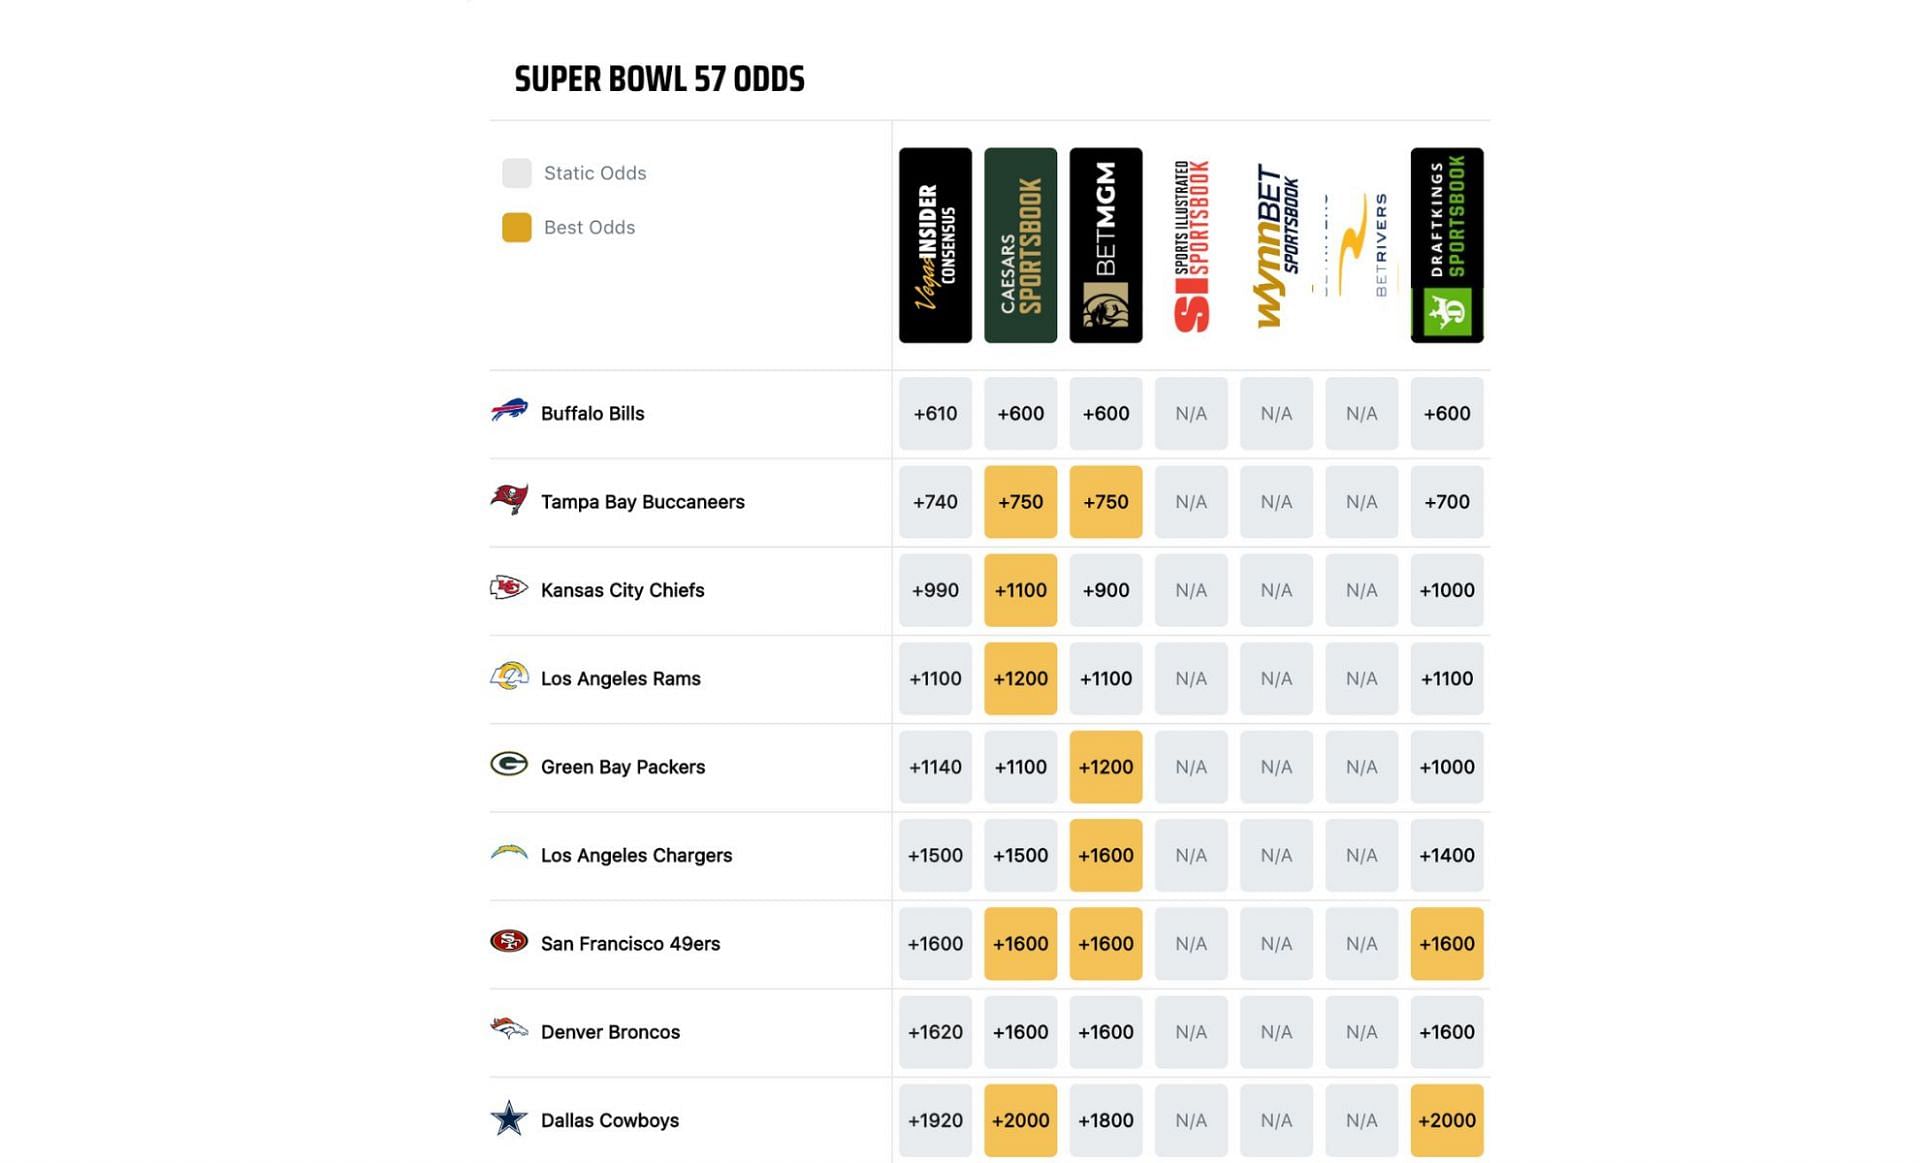 Super Bowl odds screenshot via VegasInsider.com